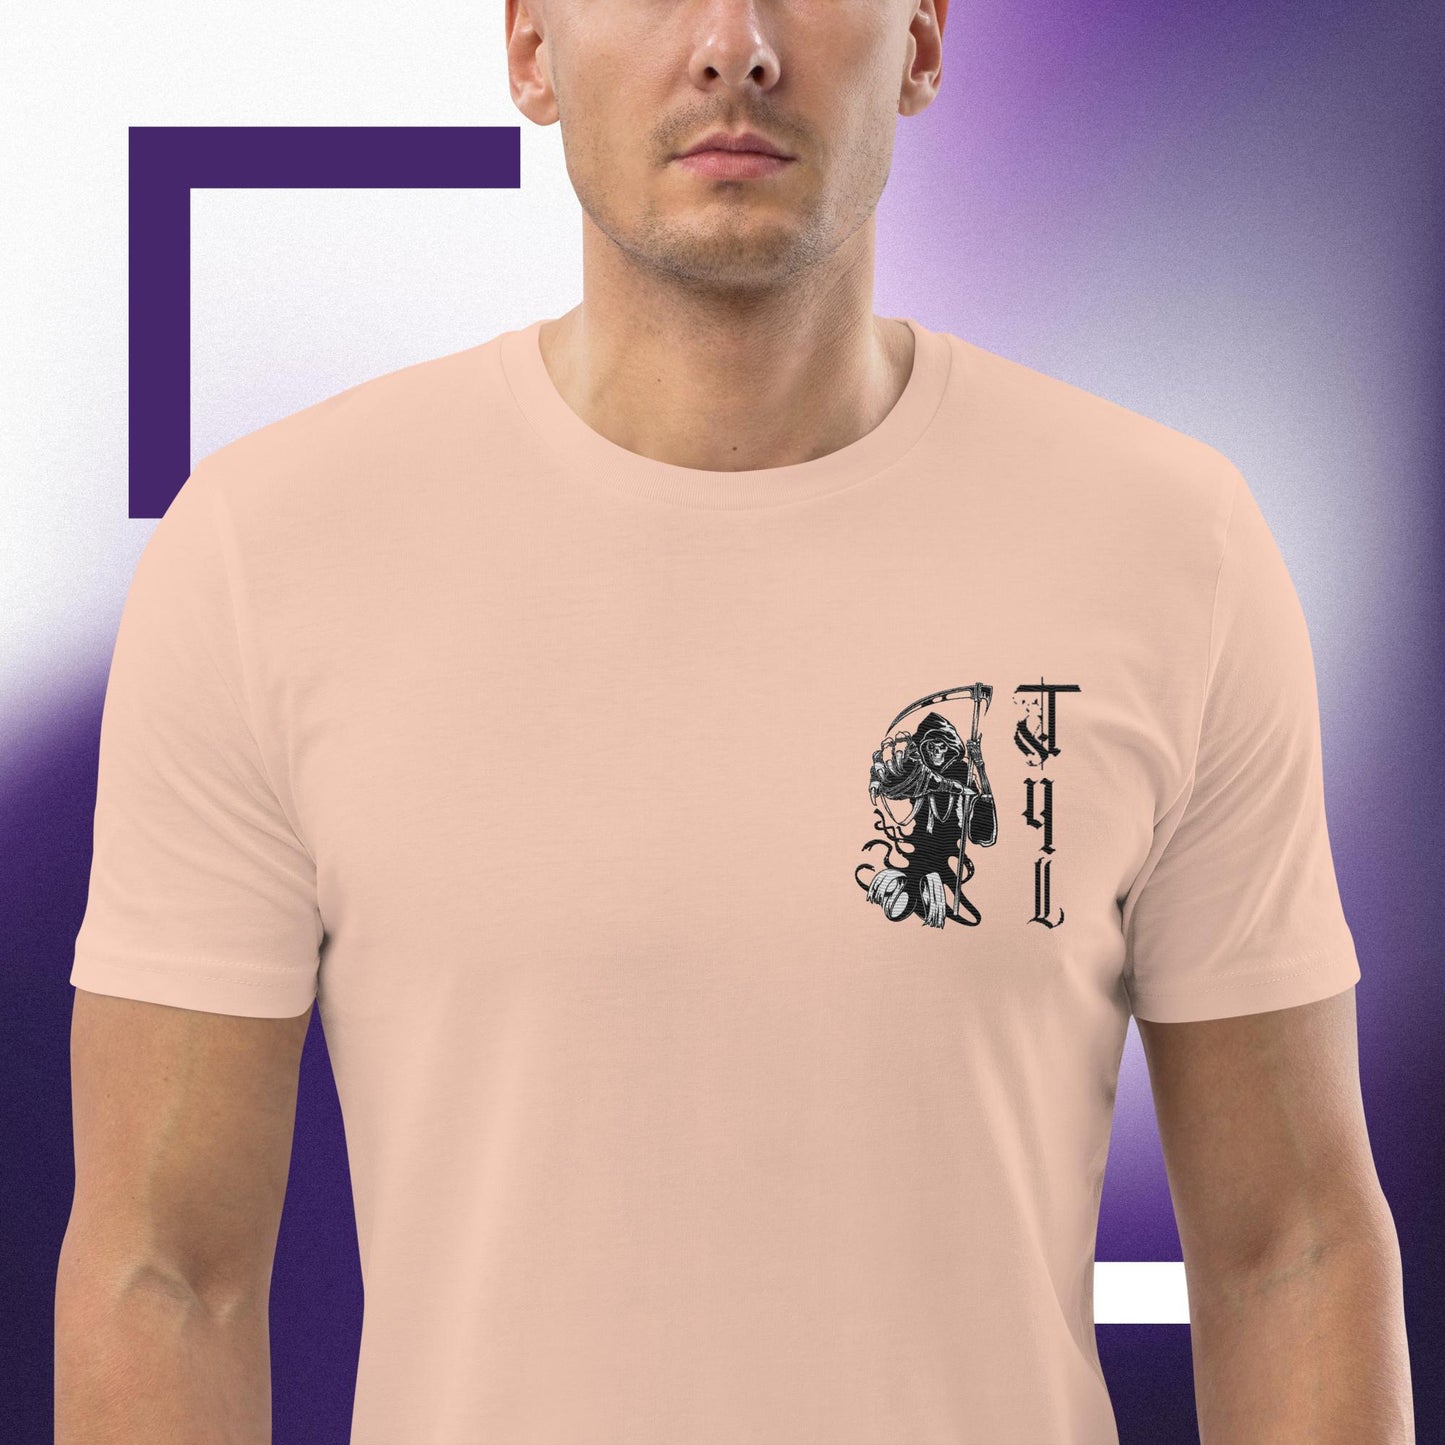 T4L unisex t-shirt